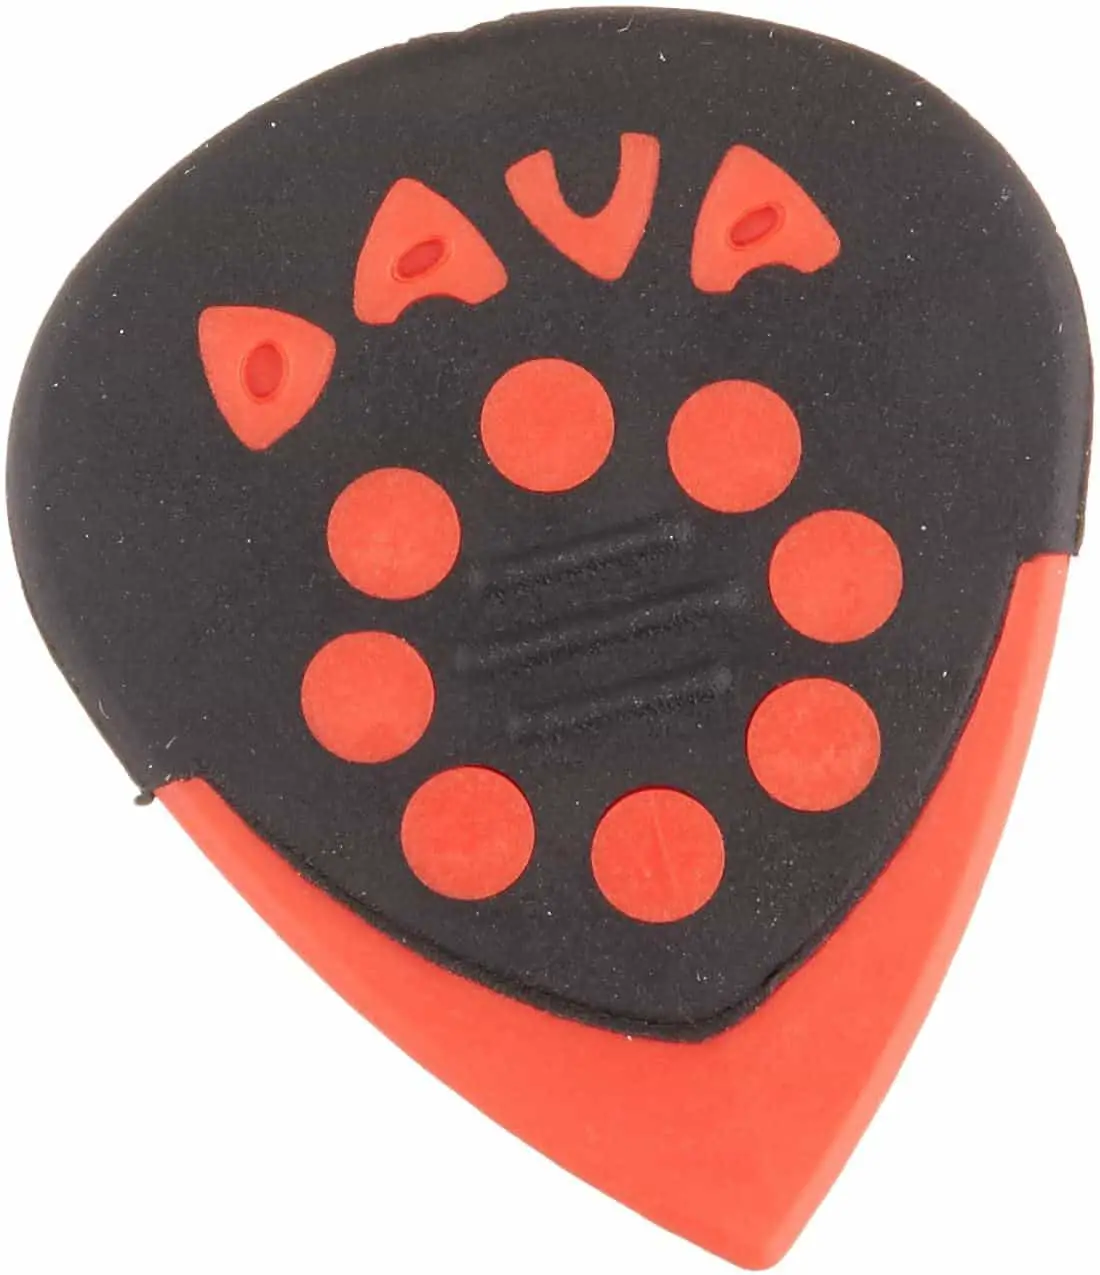 ตัวเลือกโดยรวมที่ดีที่สุดสำหรับการเลือกไฮบริด: Dava Jazz Grips